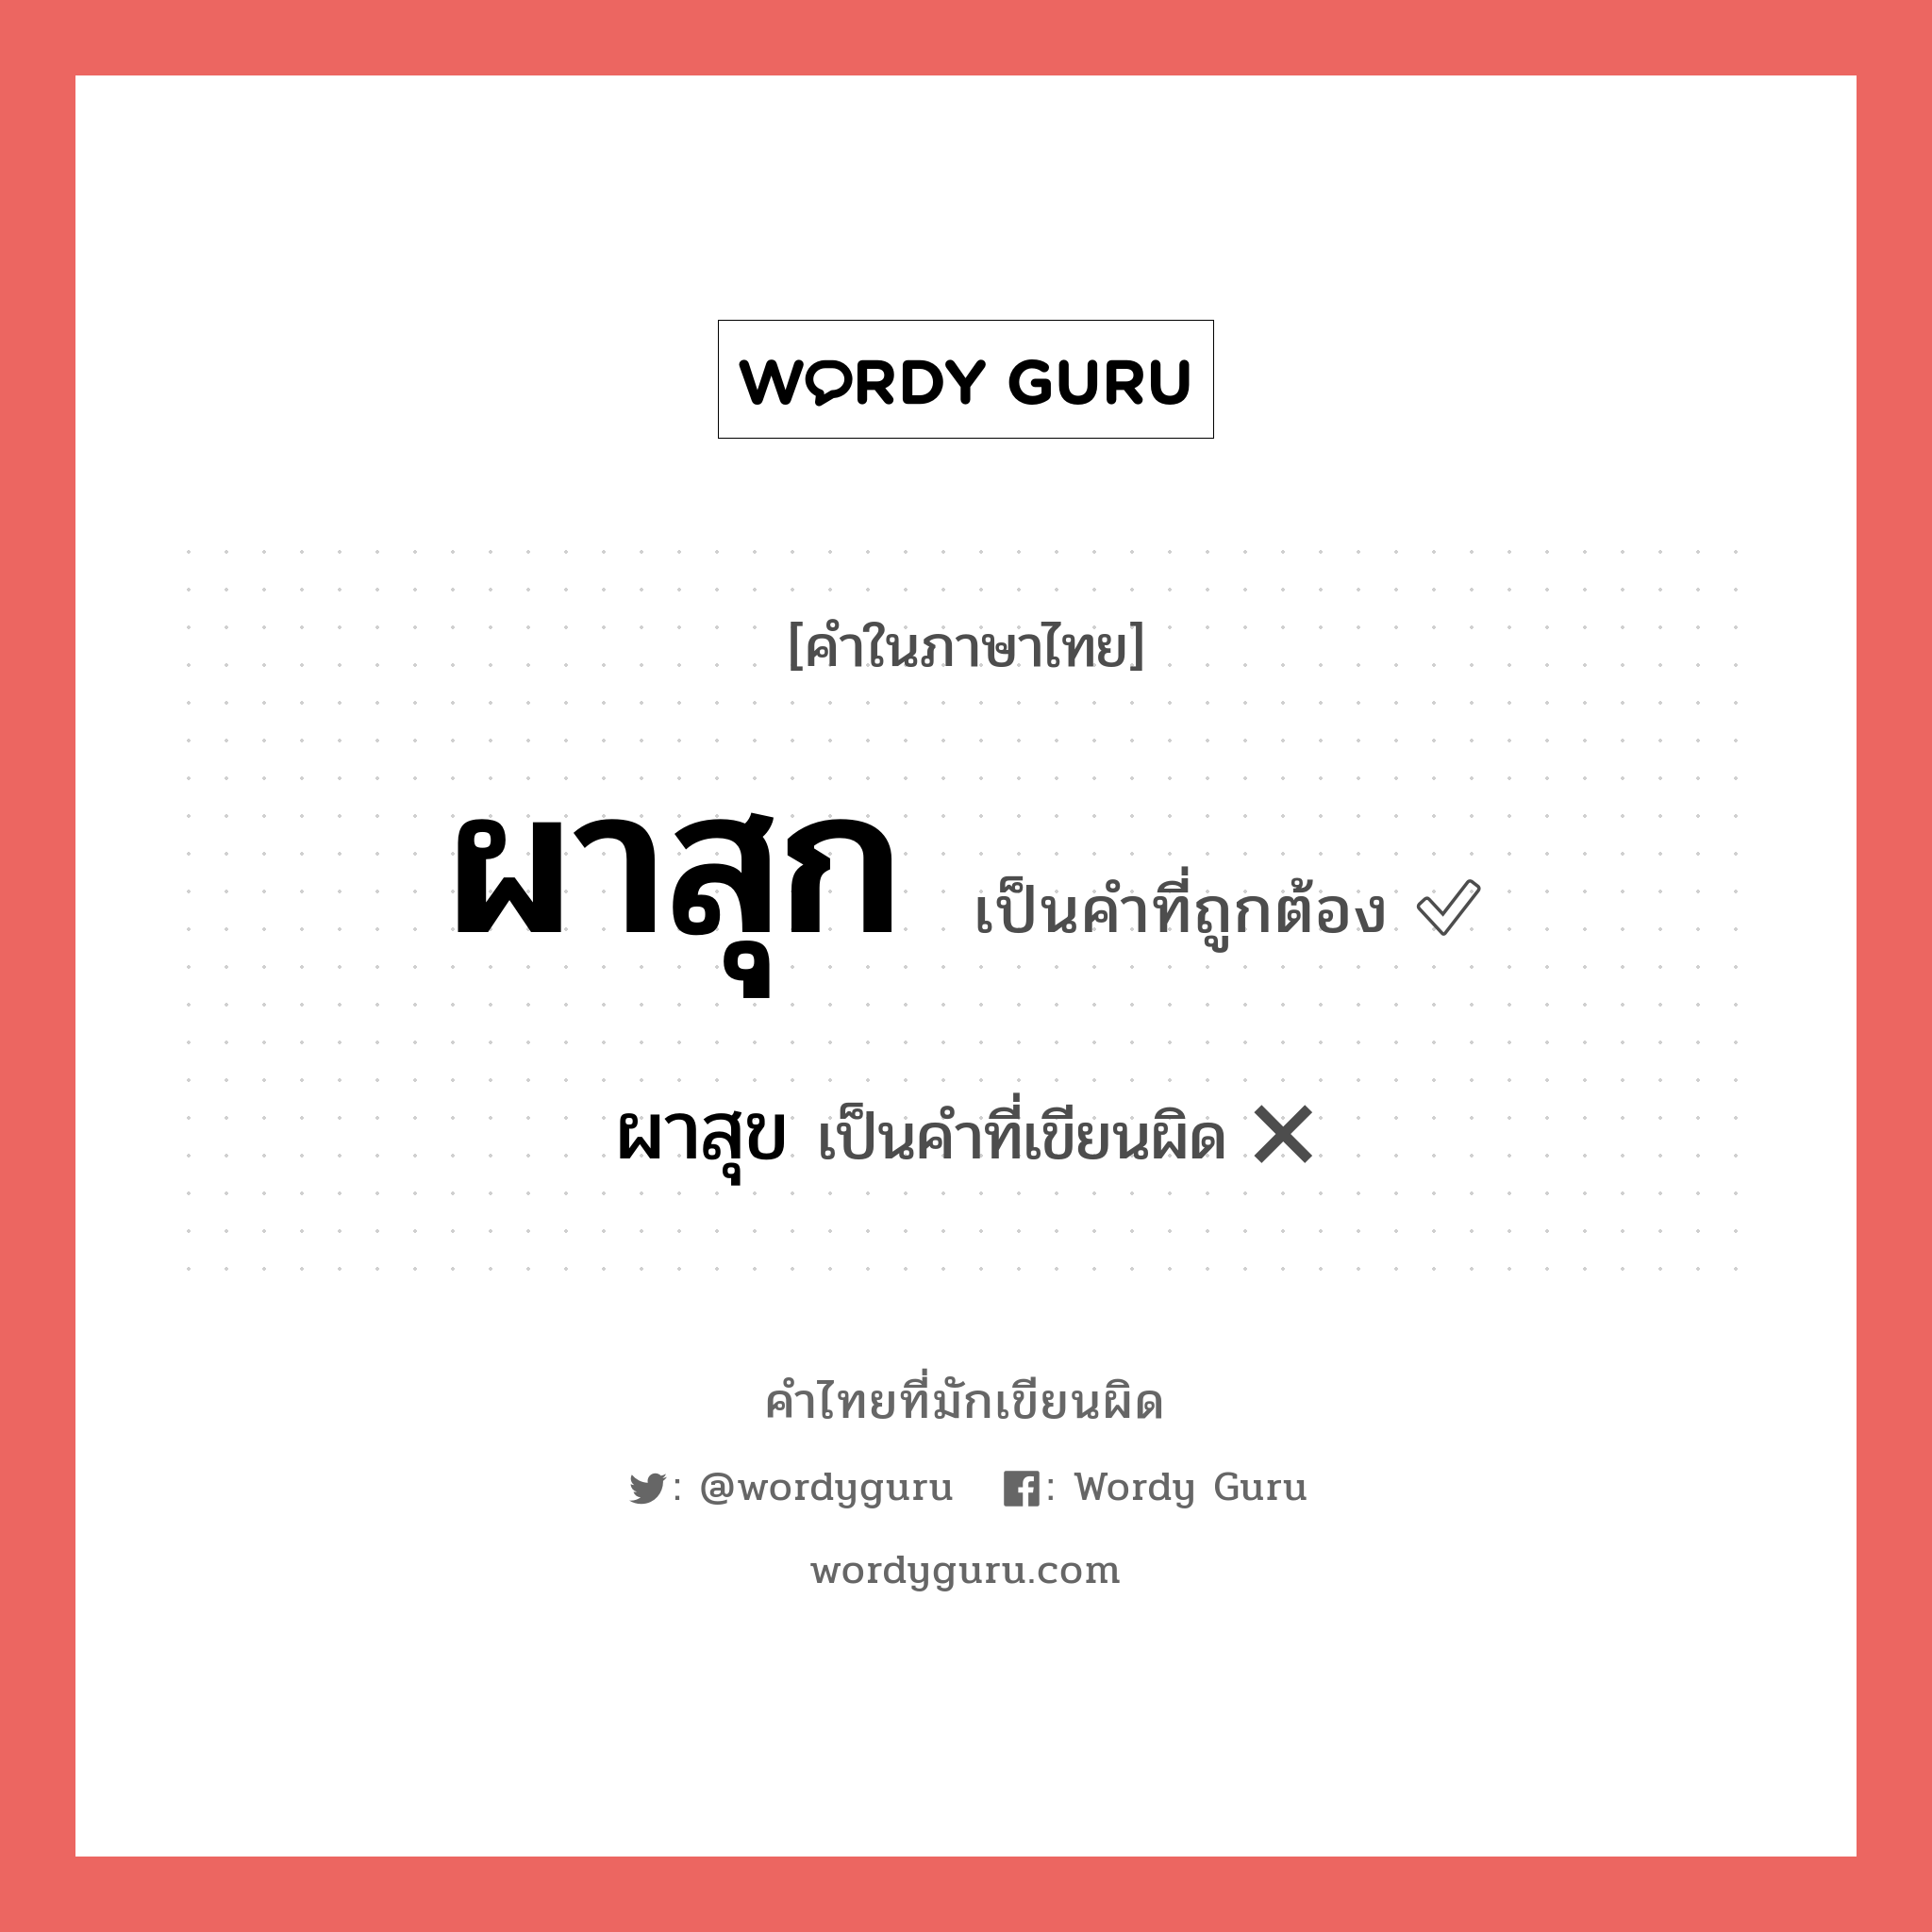 ผาสุก หรือ ผาสุข คำไหนเขียนถูก?, คำในภาษาไทยที่มักเขียนผิด ผาสุก คำที่ผิด ❌ ผาสุข